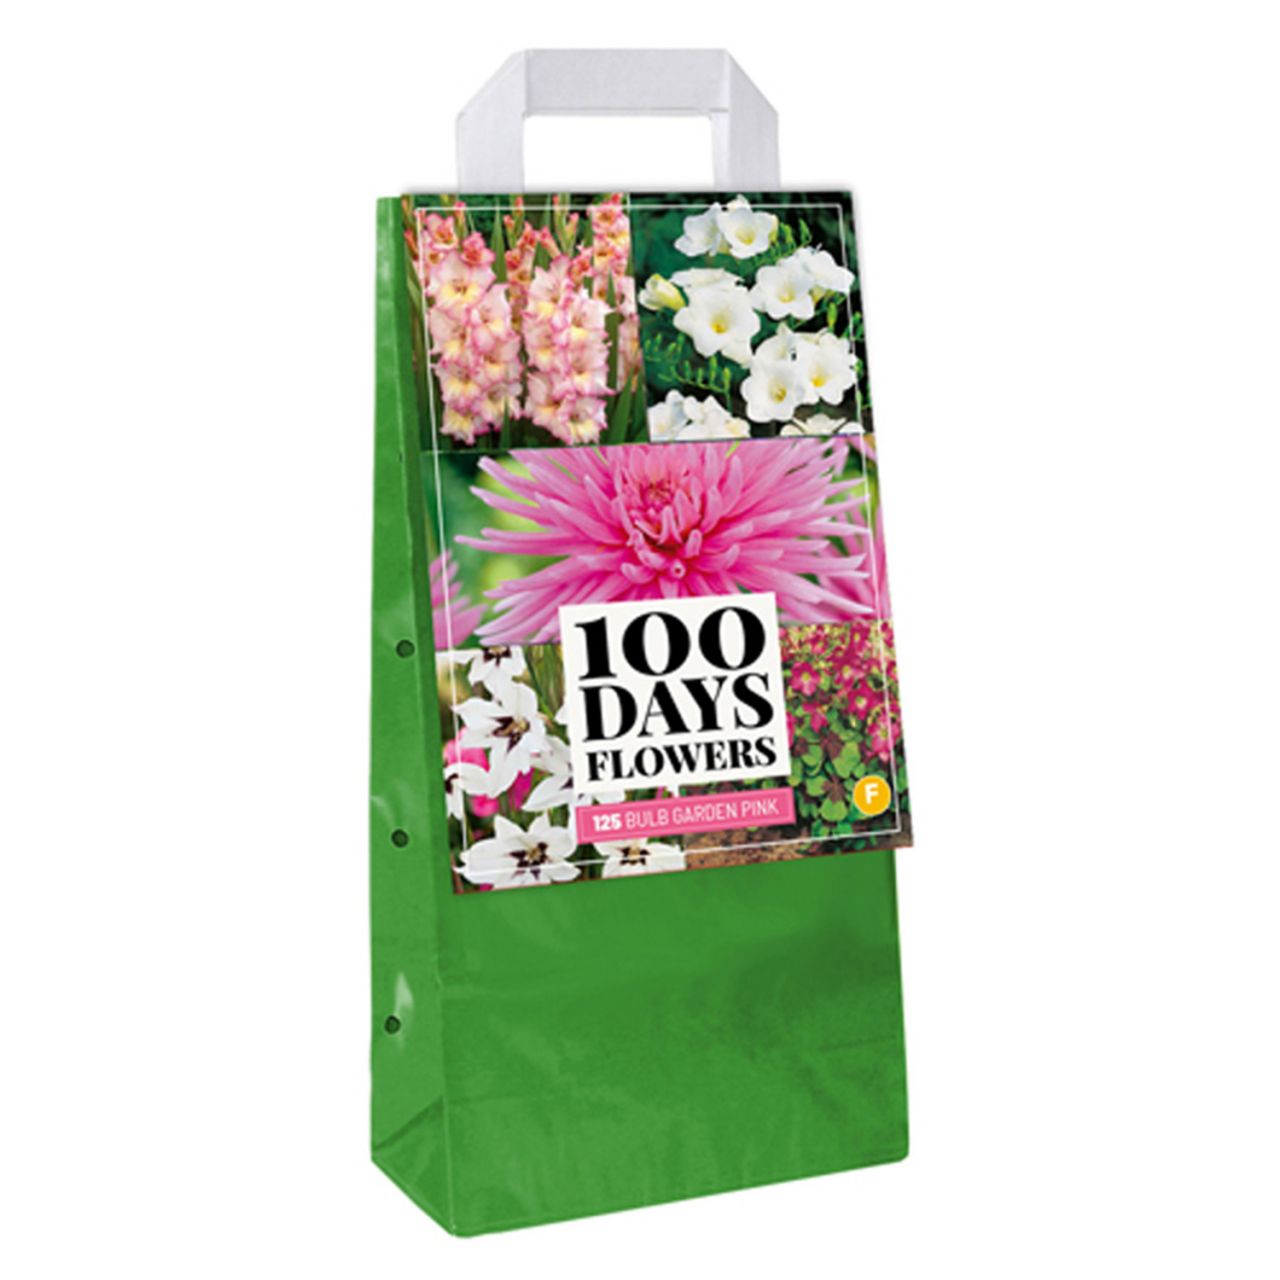 Kategorie <b>Frühlings-Blumenzwiebeln </b> - Sommerblumen-Mischung rosa-weiß - 125 Stück - Bulb Garden Bag - Bulb Garden Pink